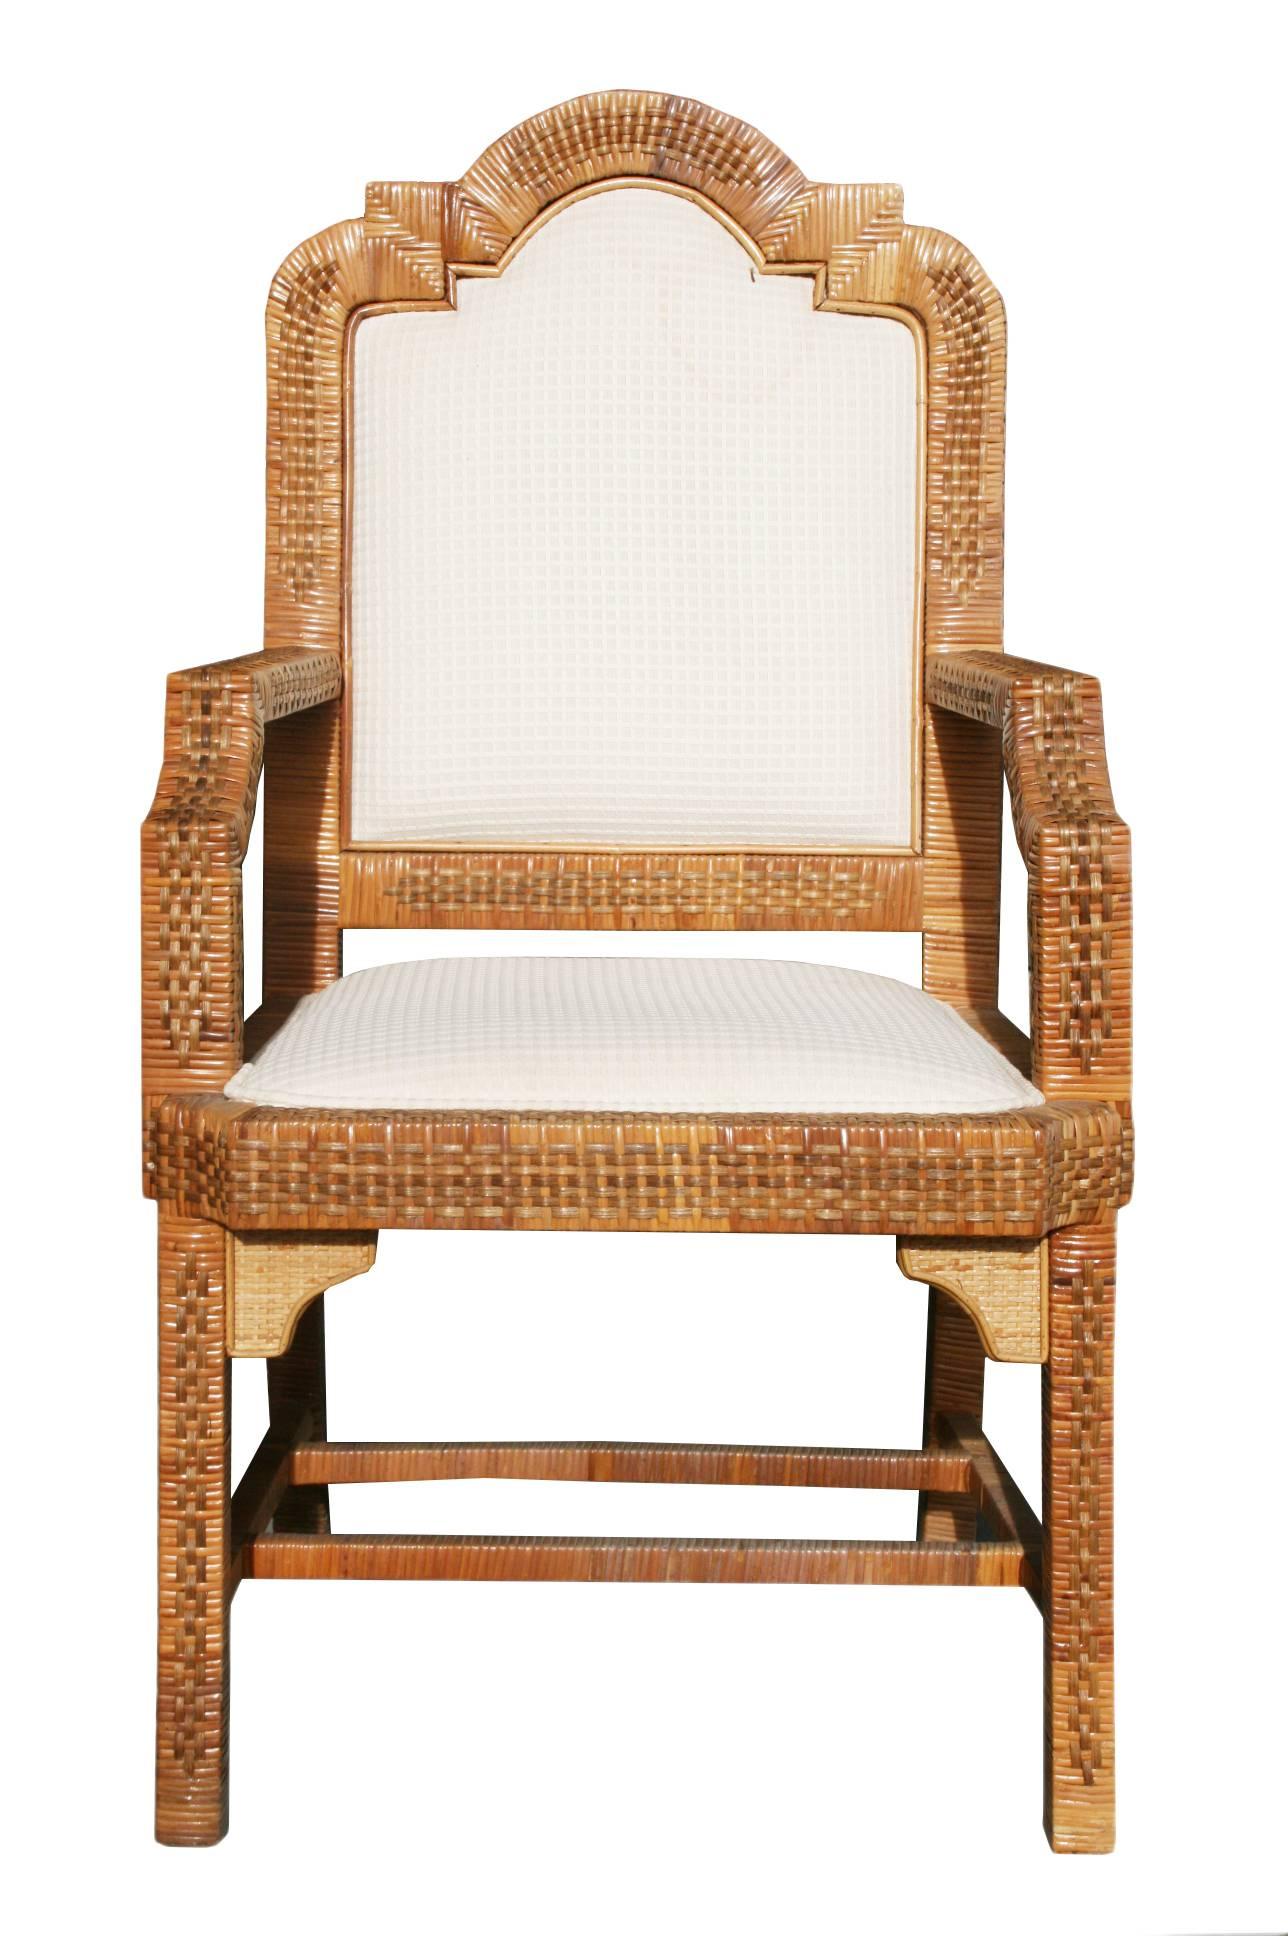 Spanische, sechsteilige Sitzgarnitur aus den 1980er Jahren, bestehend aus zwei Sesseln und vier Stühlen mit geraden Linien und eleganten Kurven. Massivholzrahmen mit Flechtwerk aus Weide und Bambusgeflecht verkleidet.
 